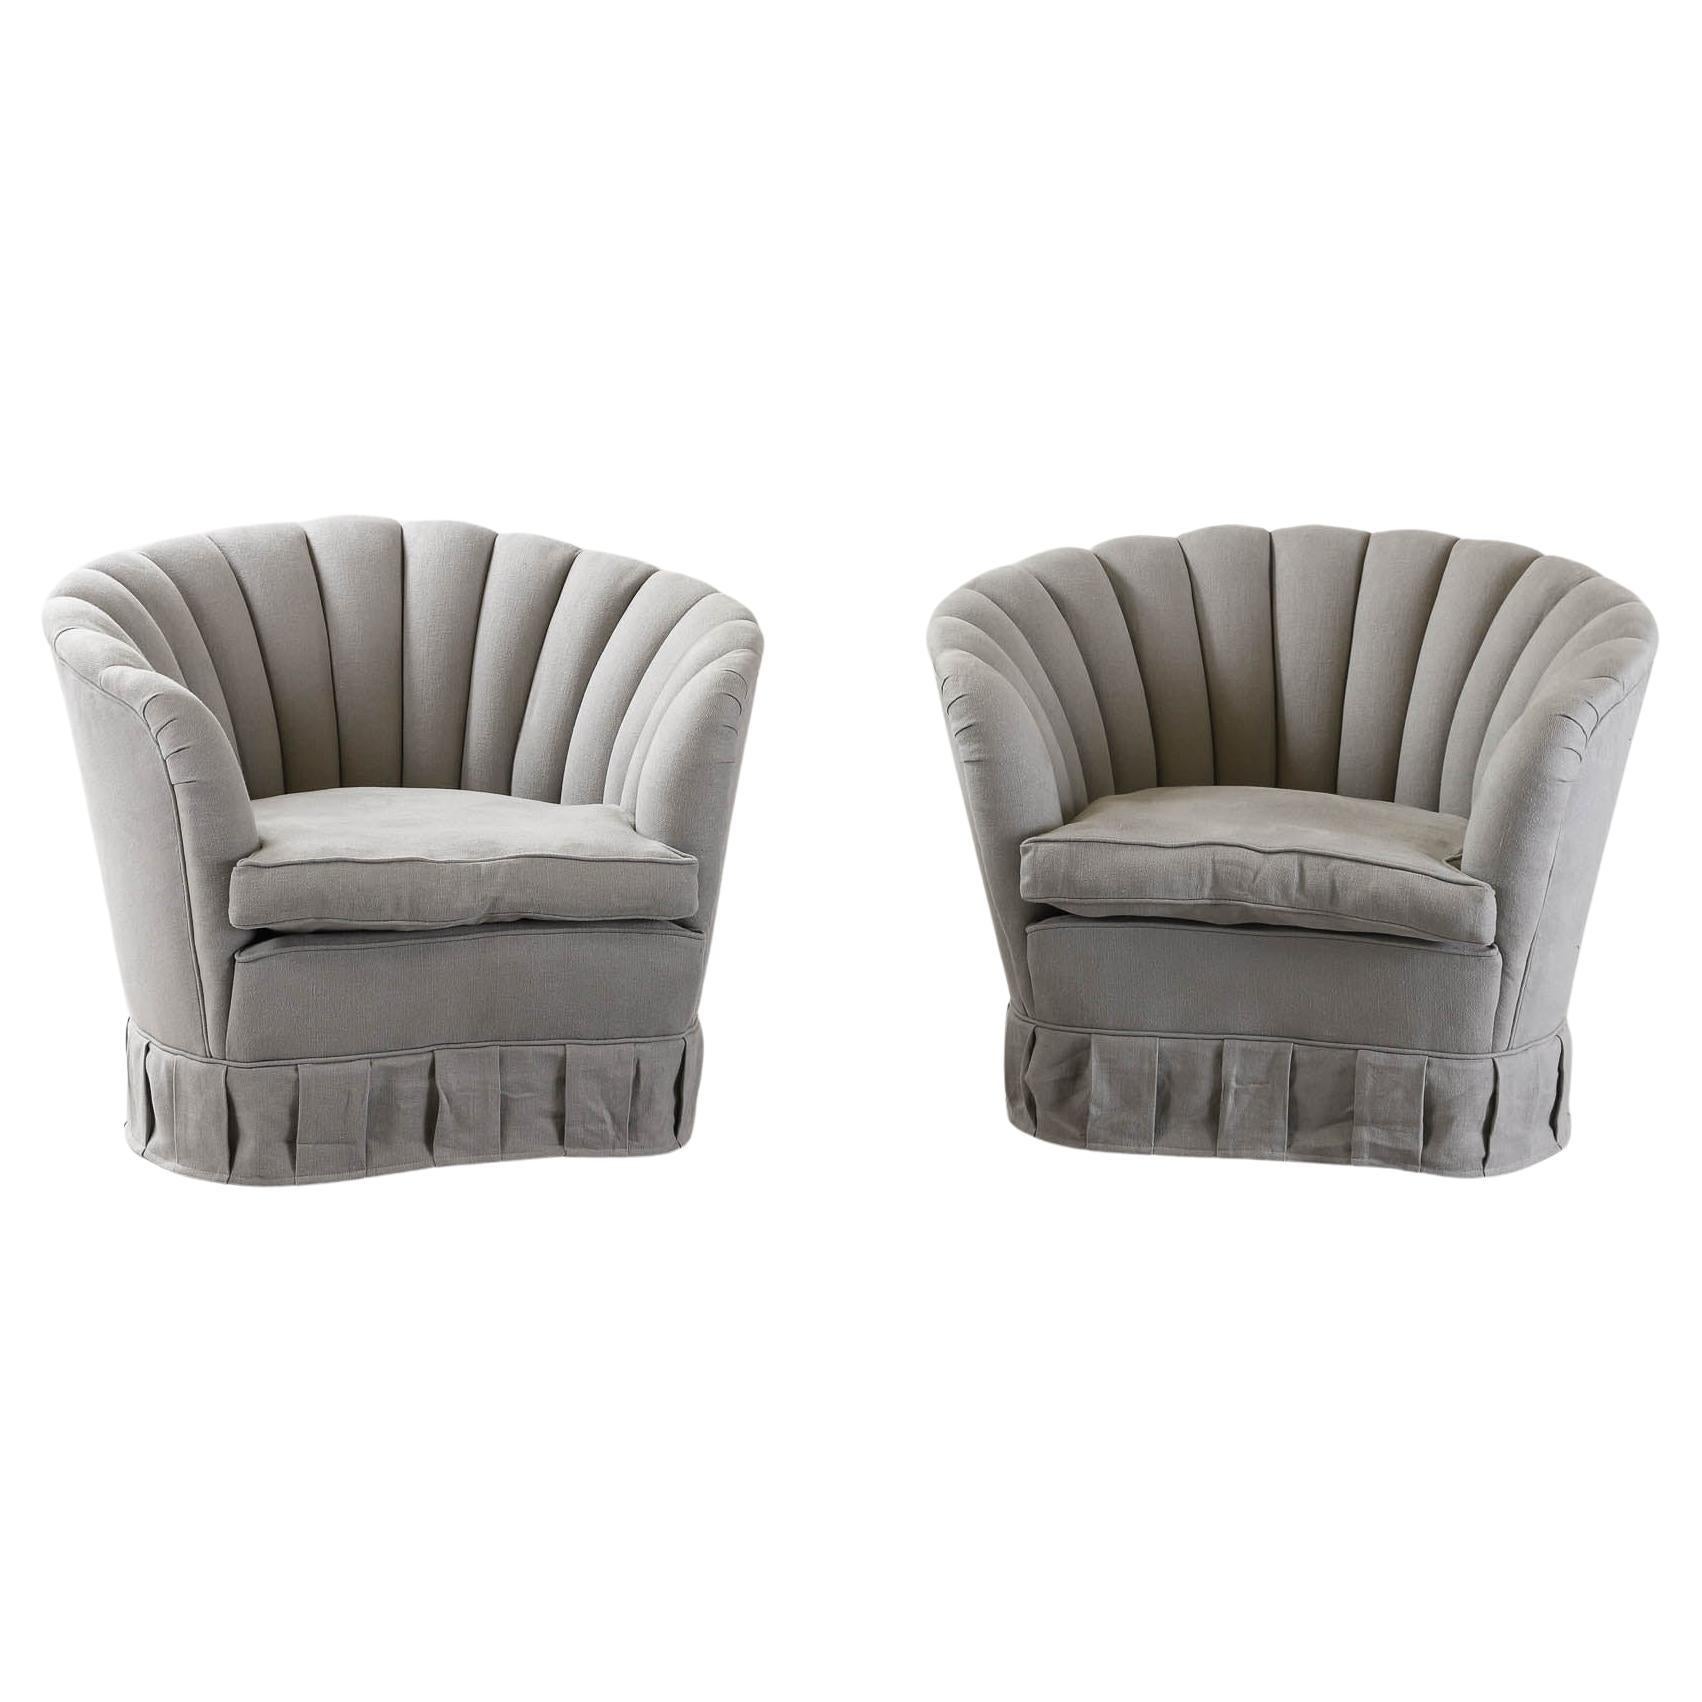 Pair of Gio Ponti Chairs